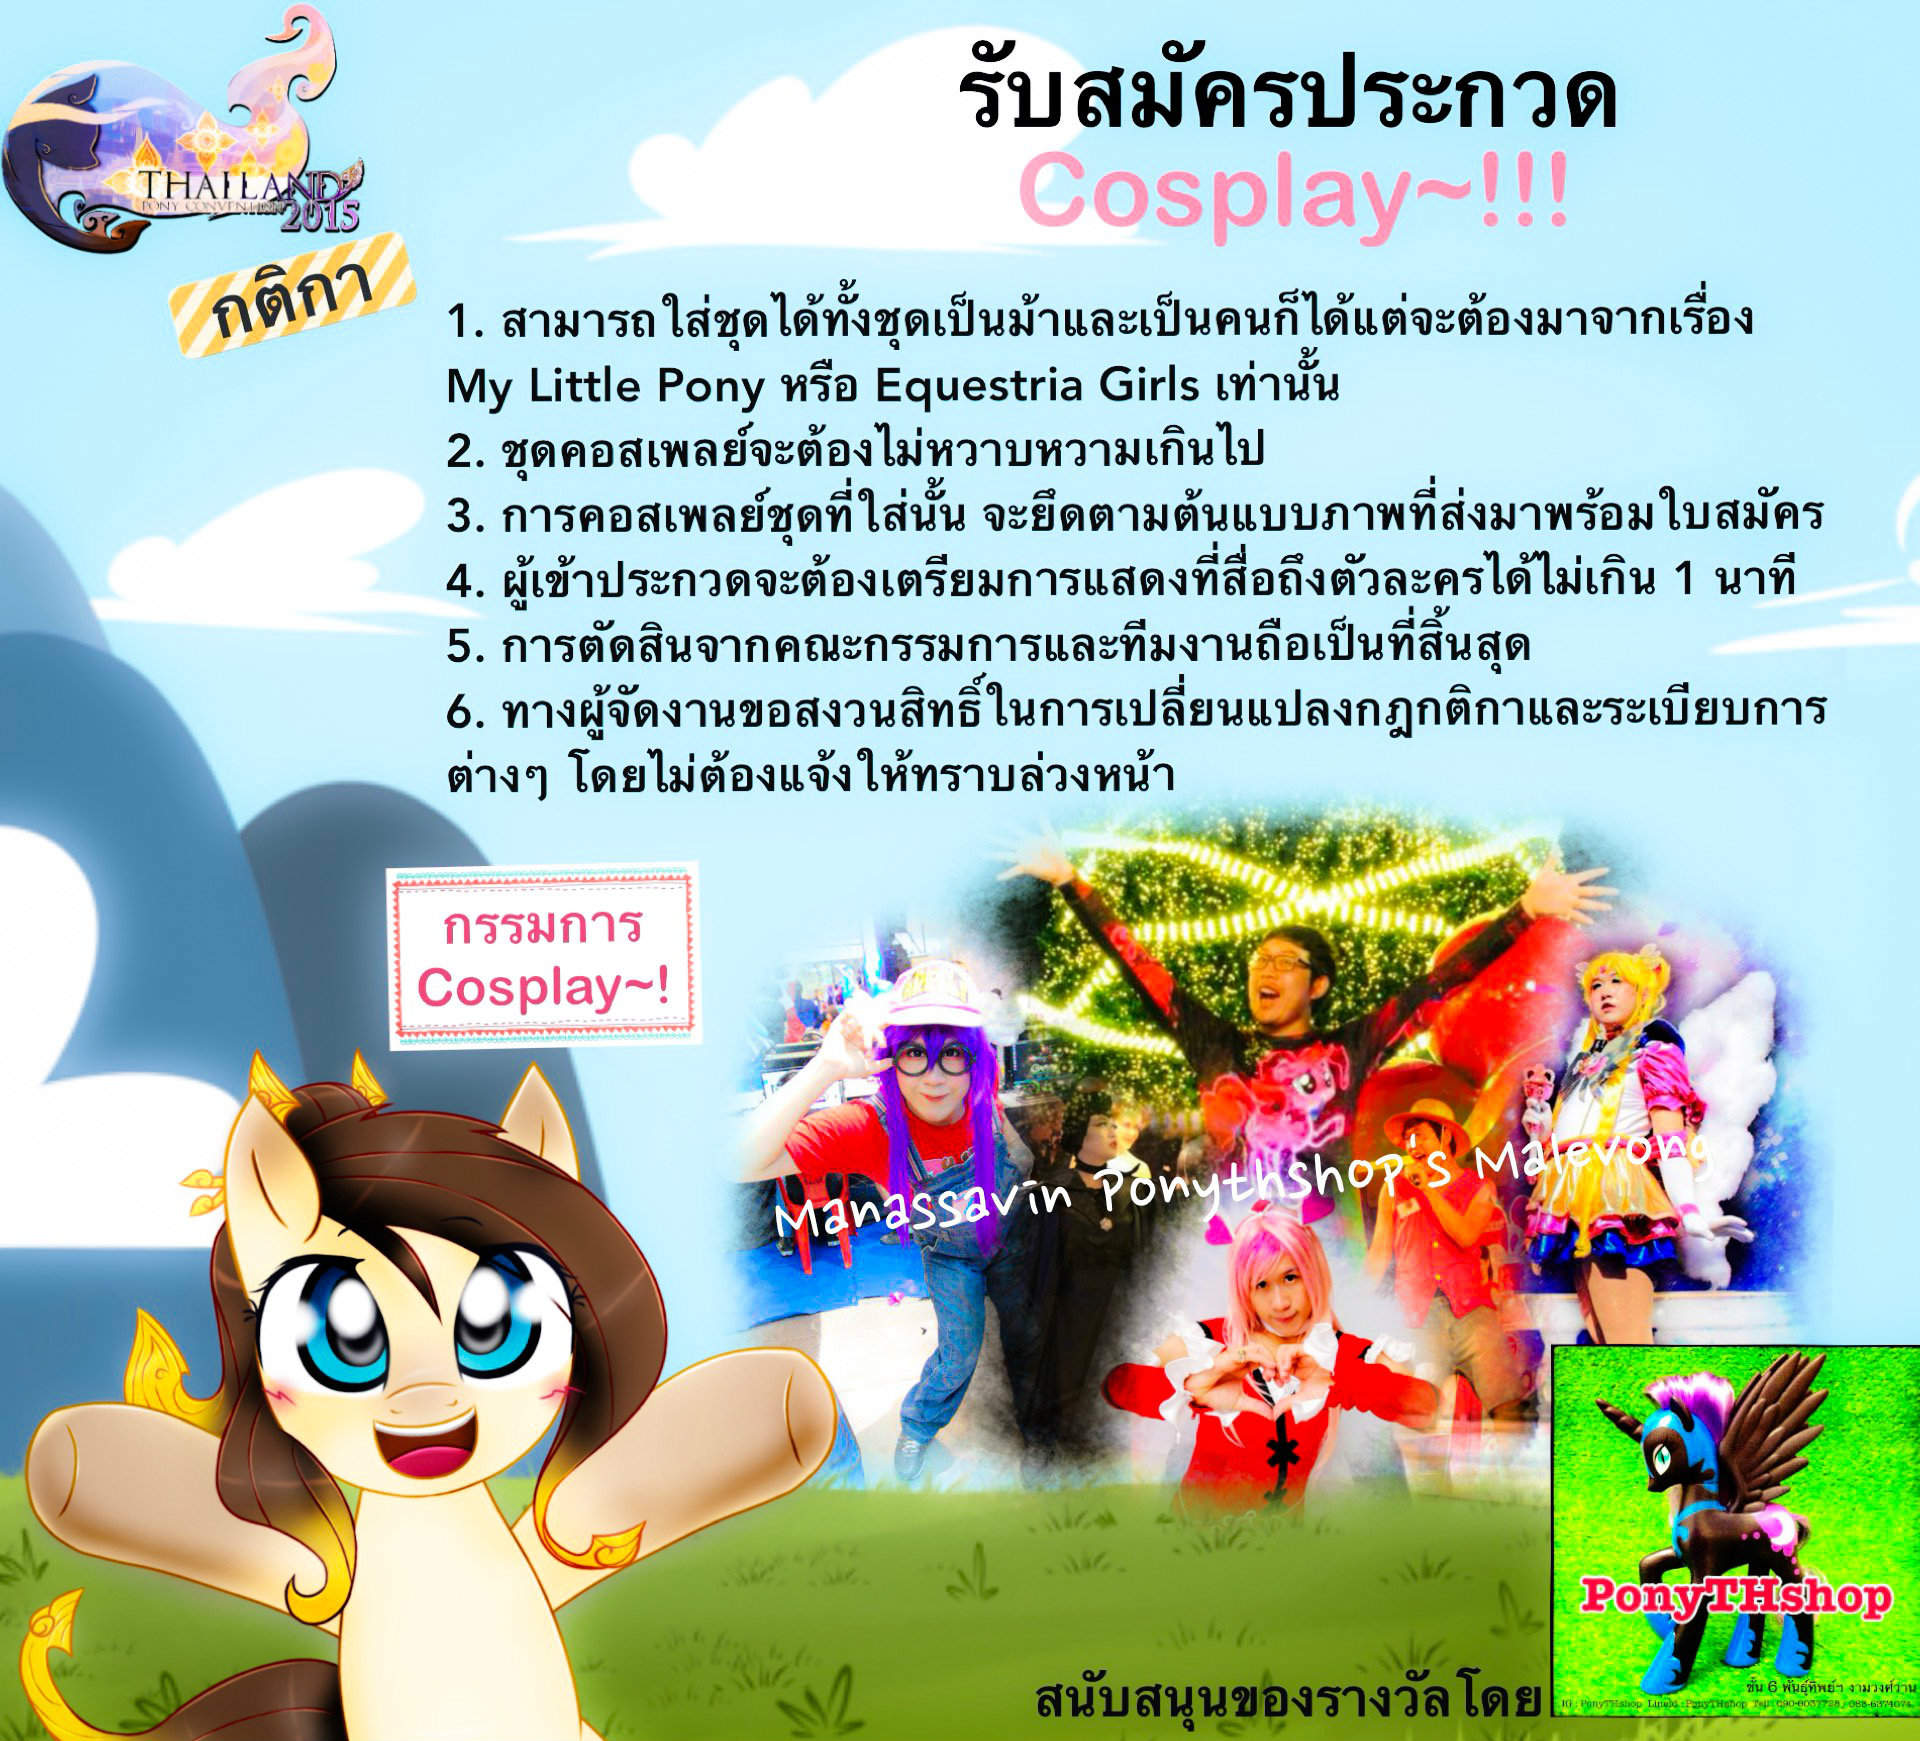 Thailandponycon 2015